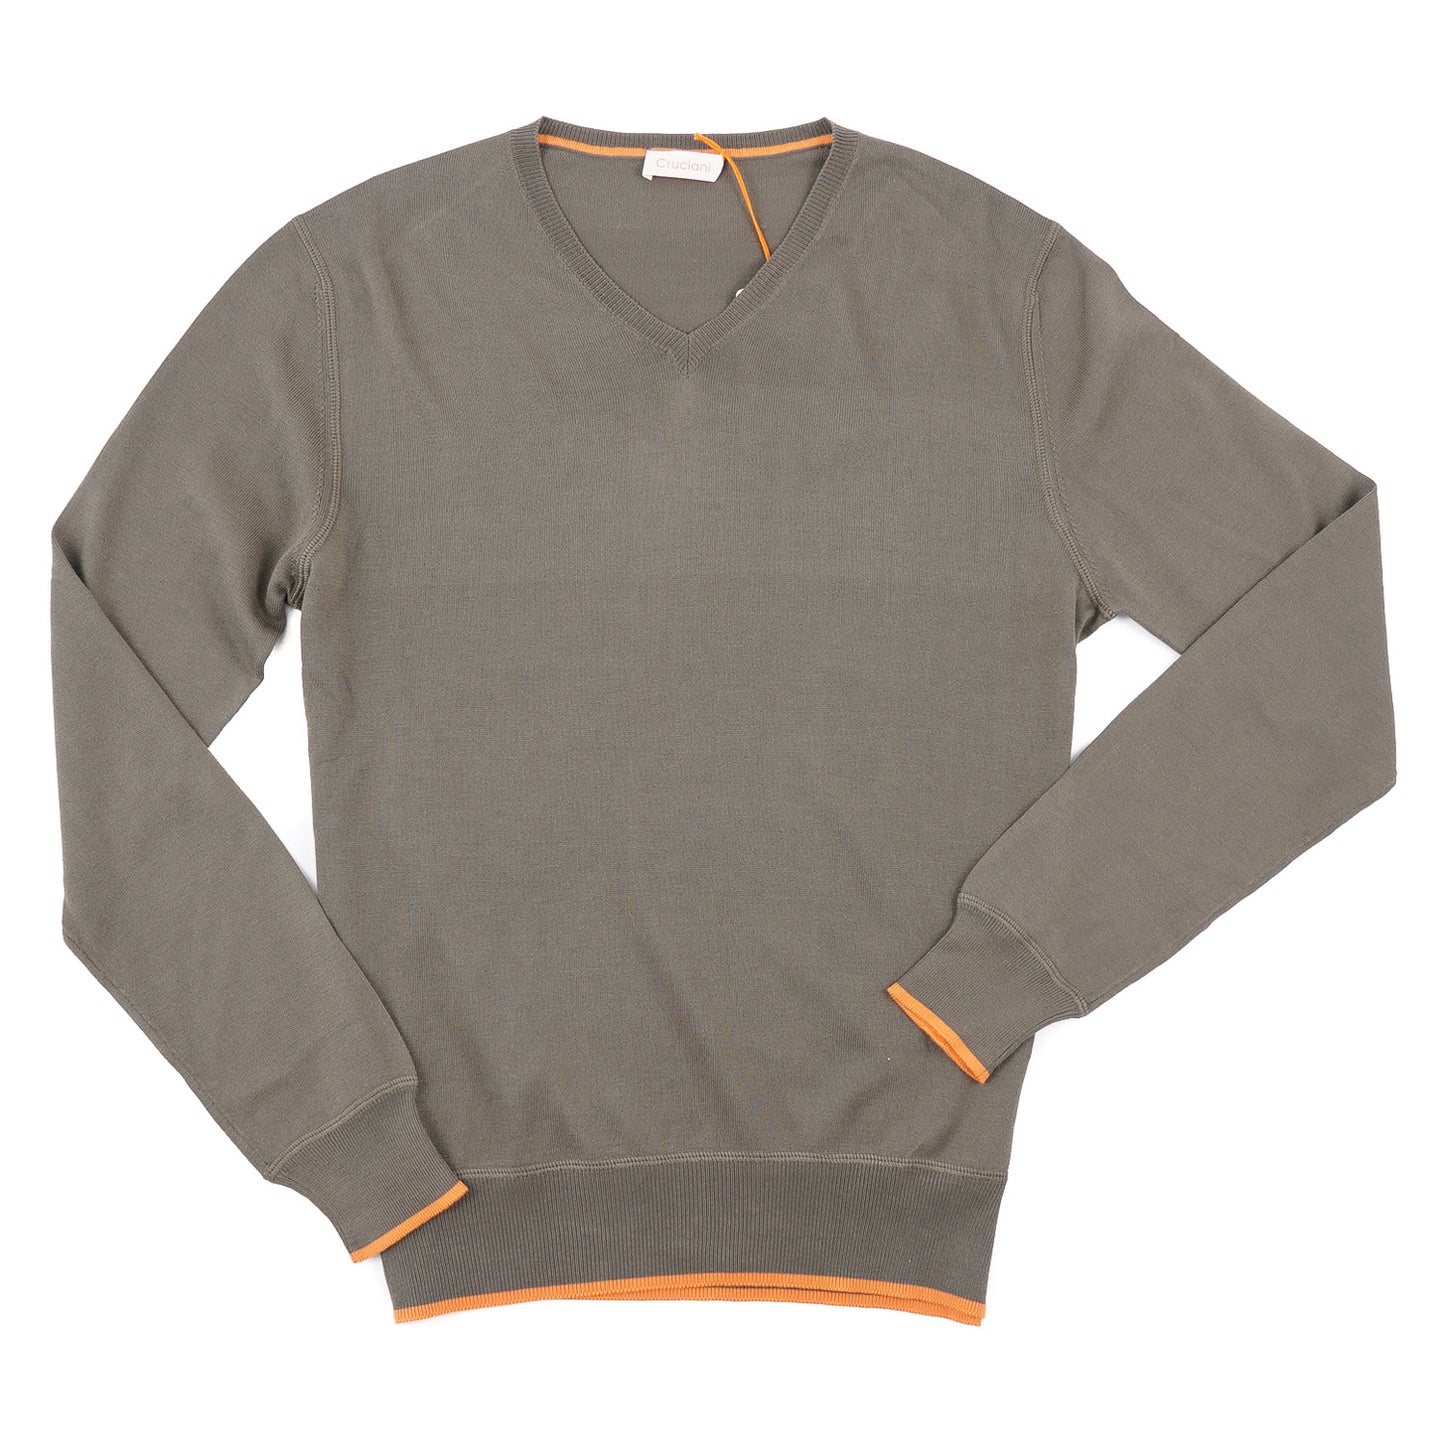 Cruciani Extrafine Cotton-Silk Sweater - Top Shelf Apparel